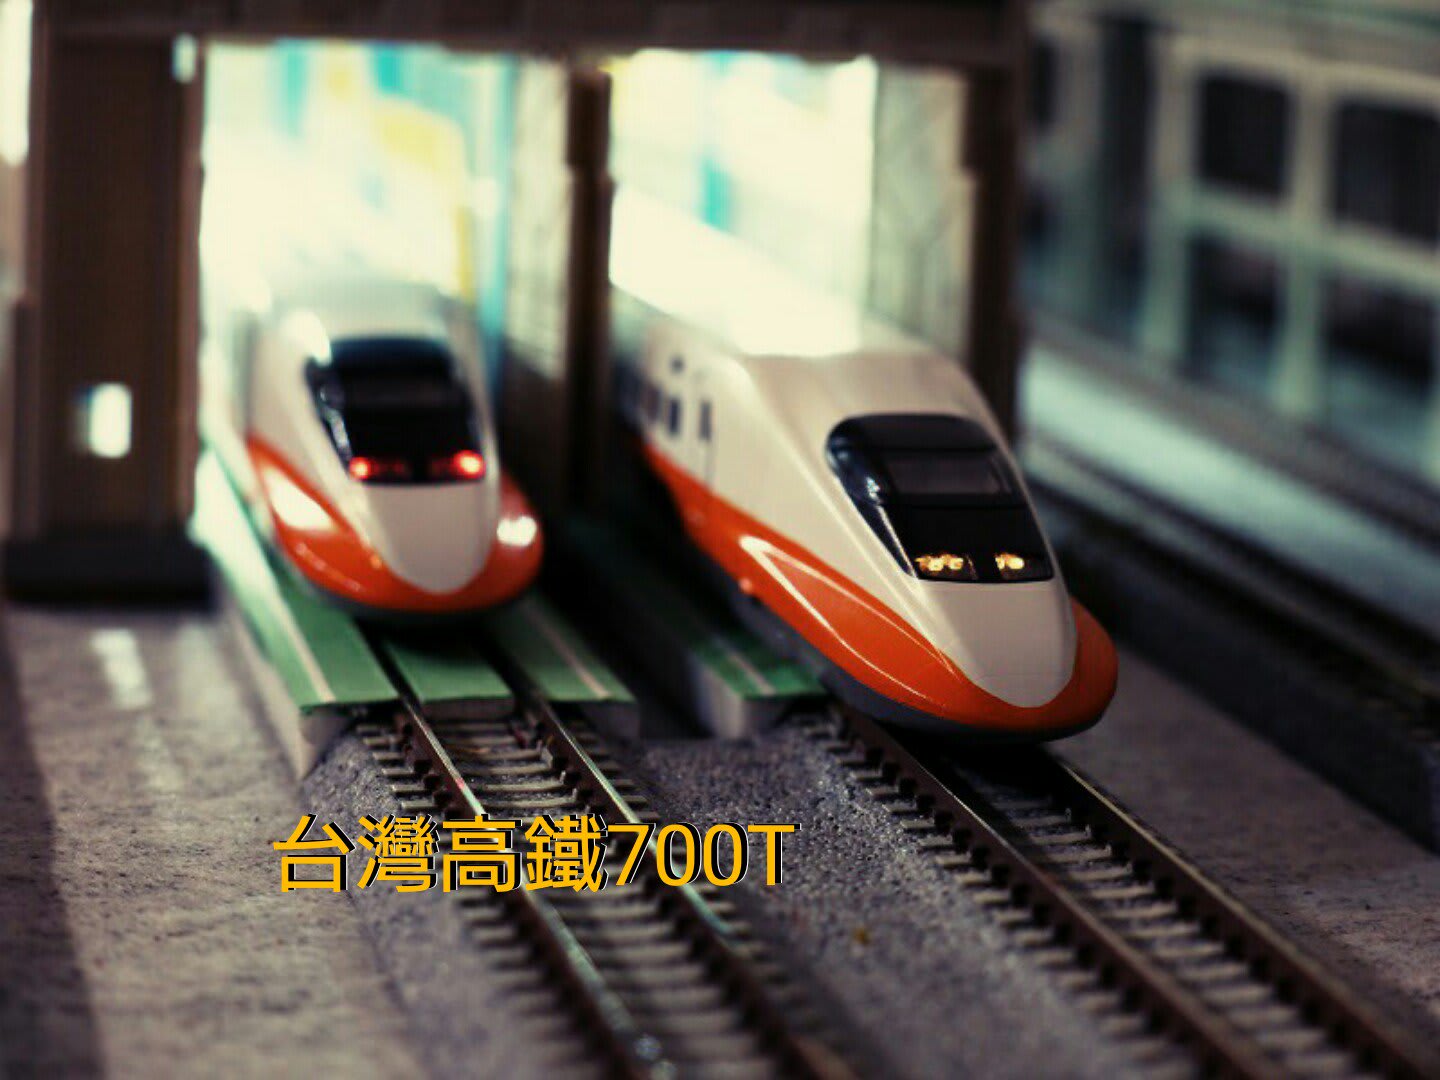 台湾高鐵700T - キャプ鉄